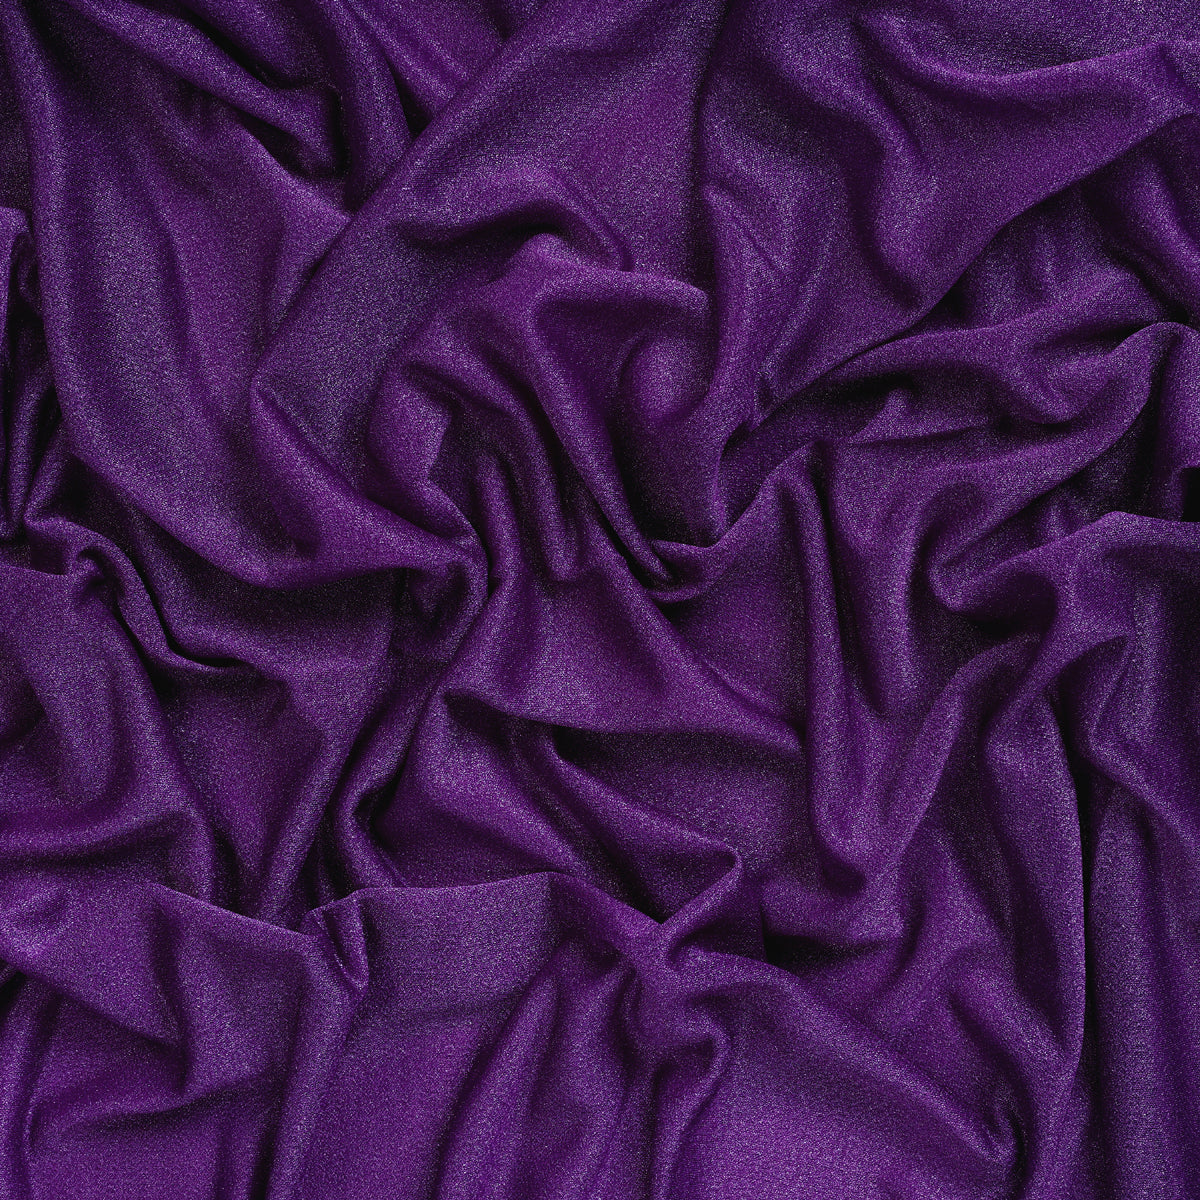 Purple,a8801528-3162-4bd7-8064-1932c03e4b3d